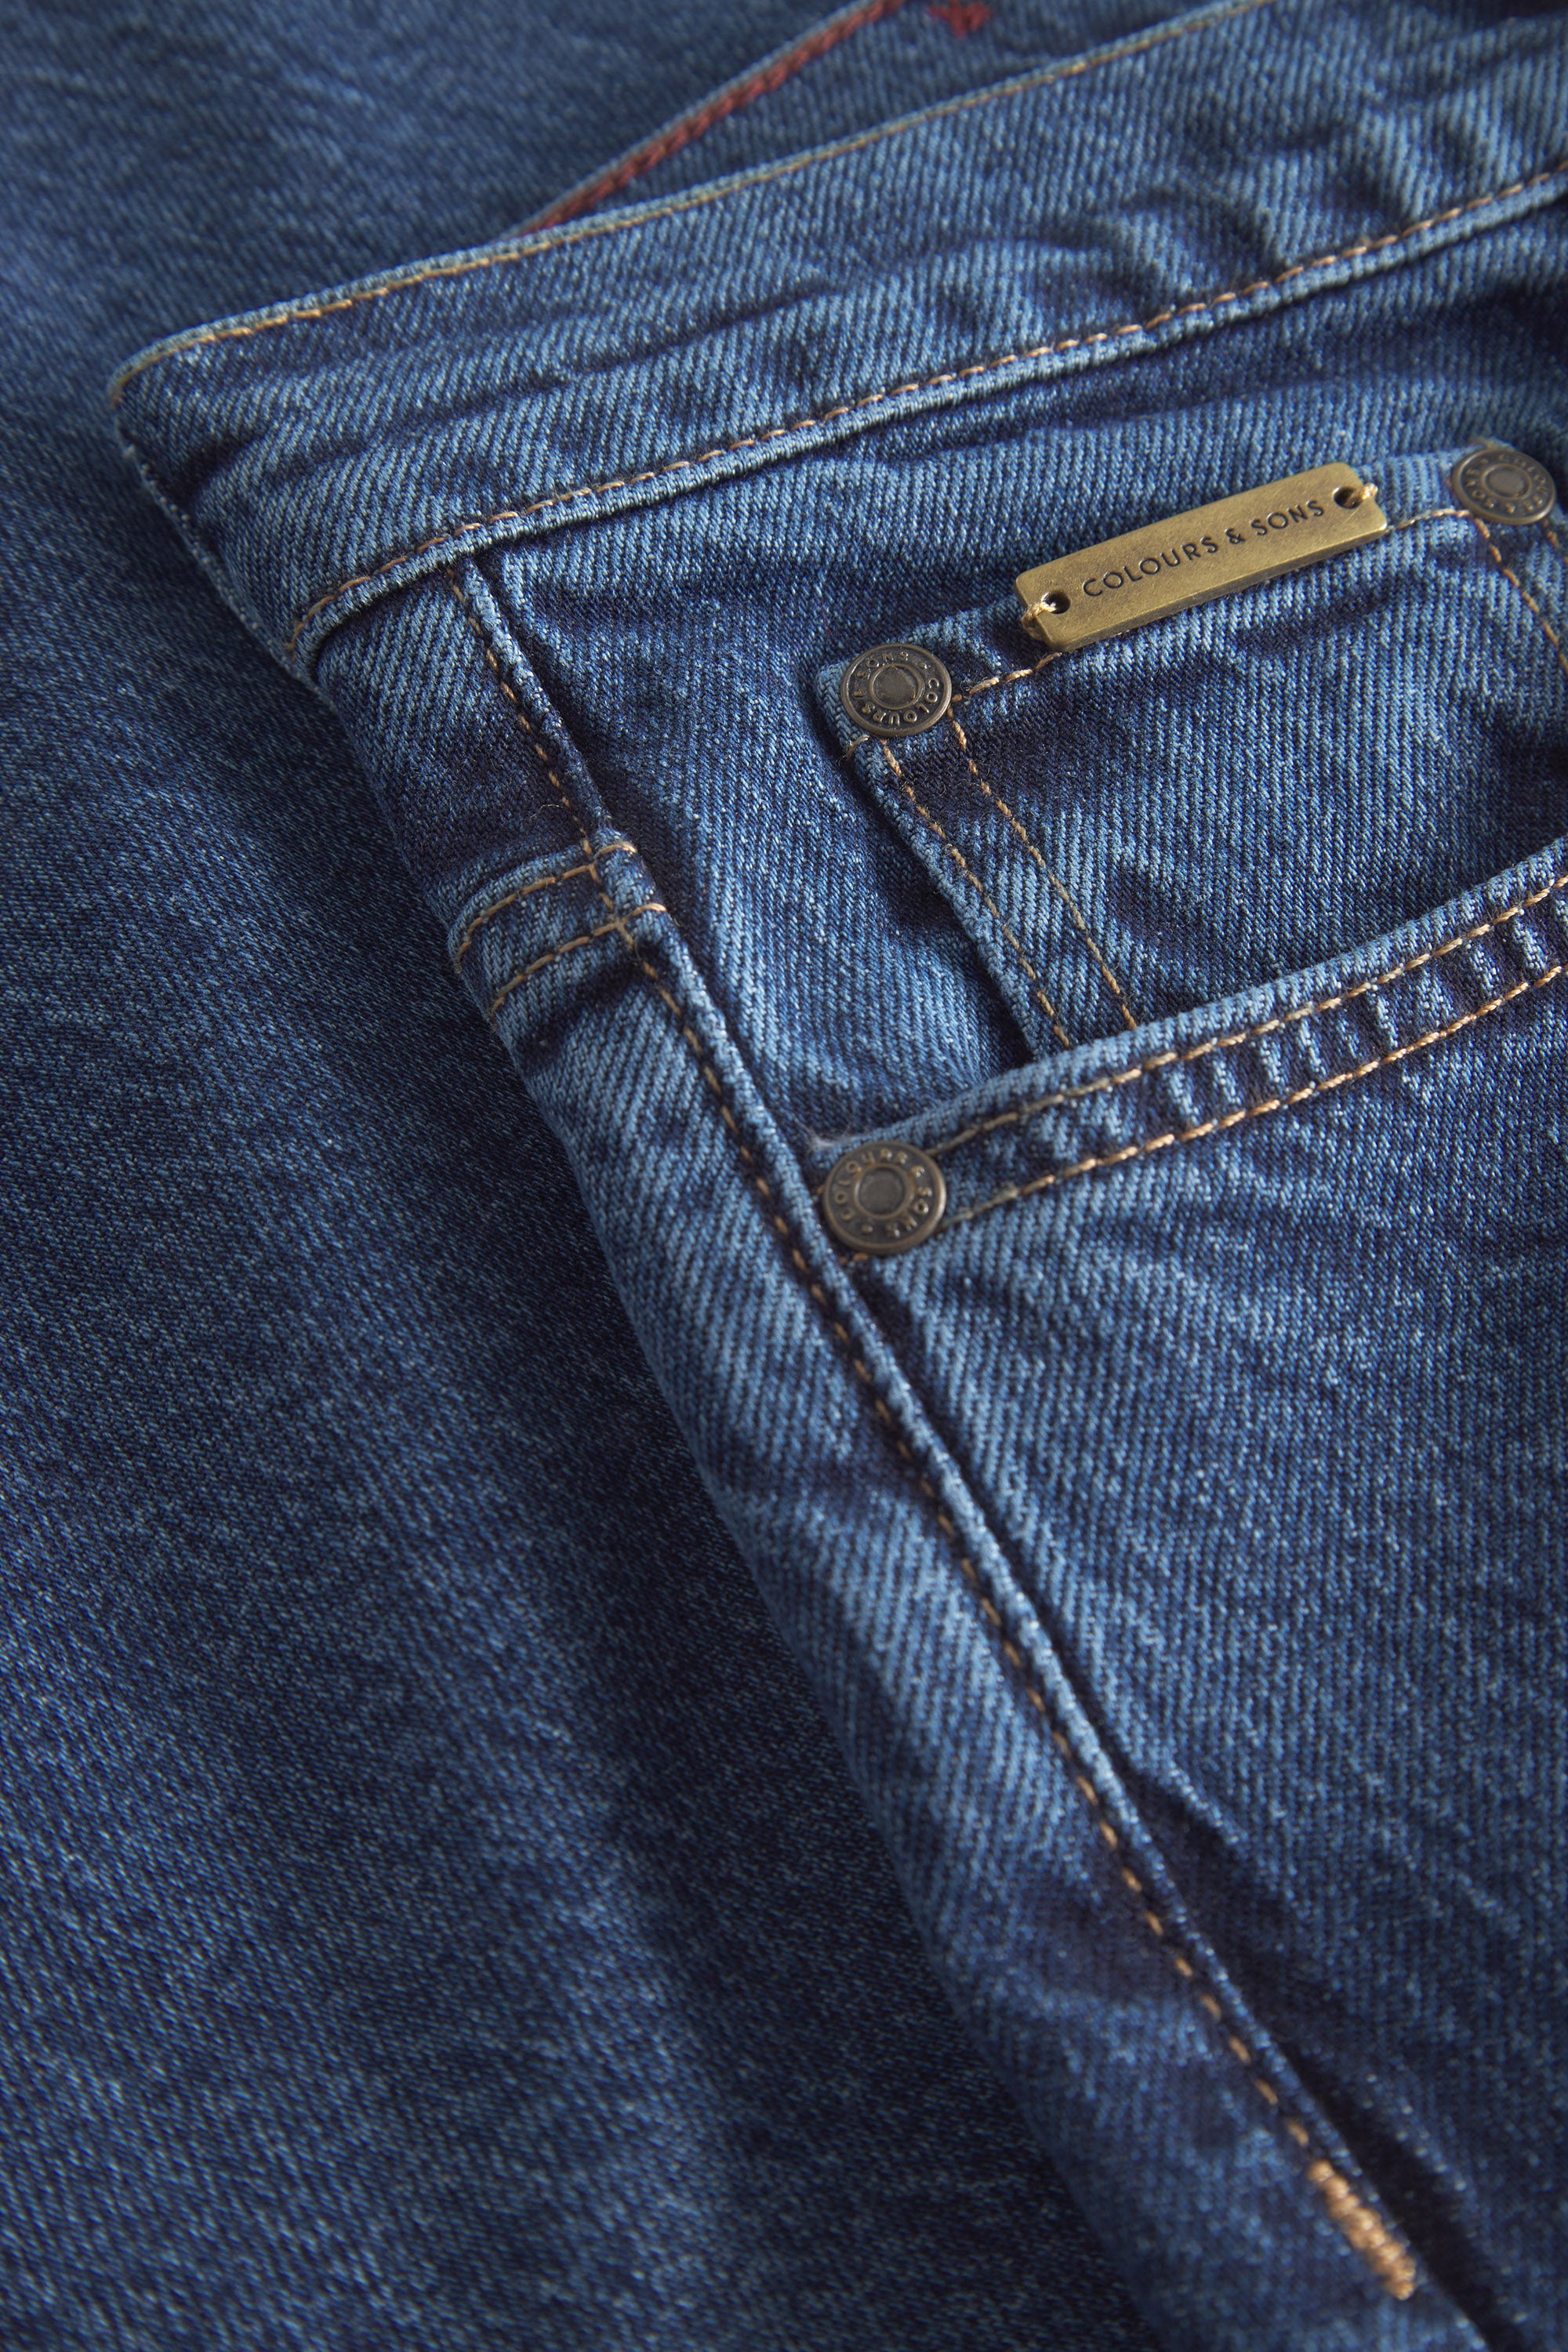 Herren Jeans, blau, 77% Baumwolle 22% recycled Baumwolle 1% Elastan von Colours & Sons